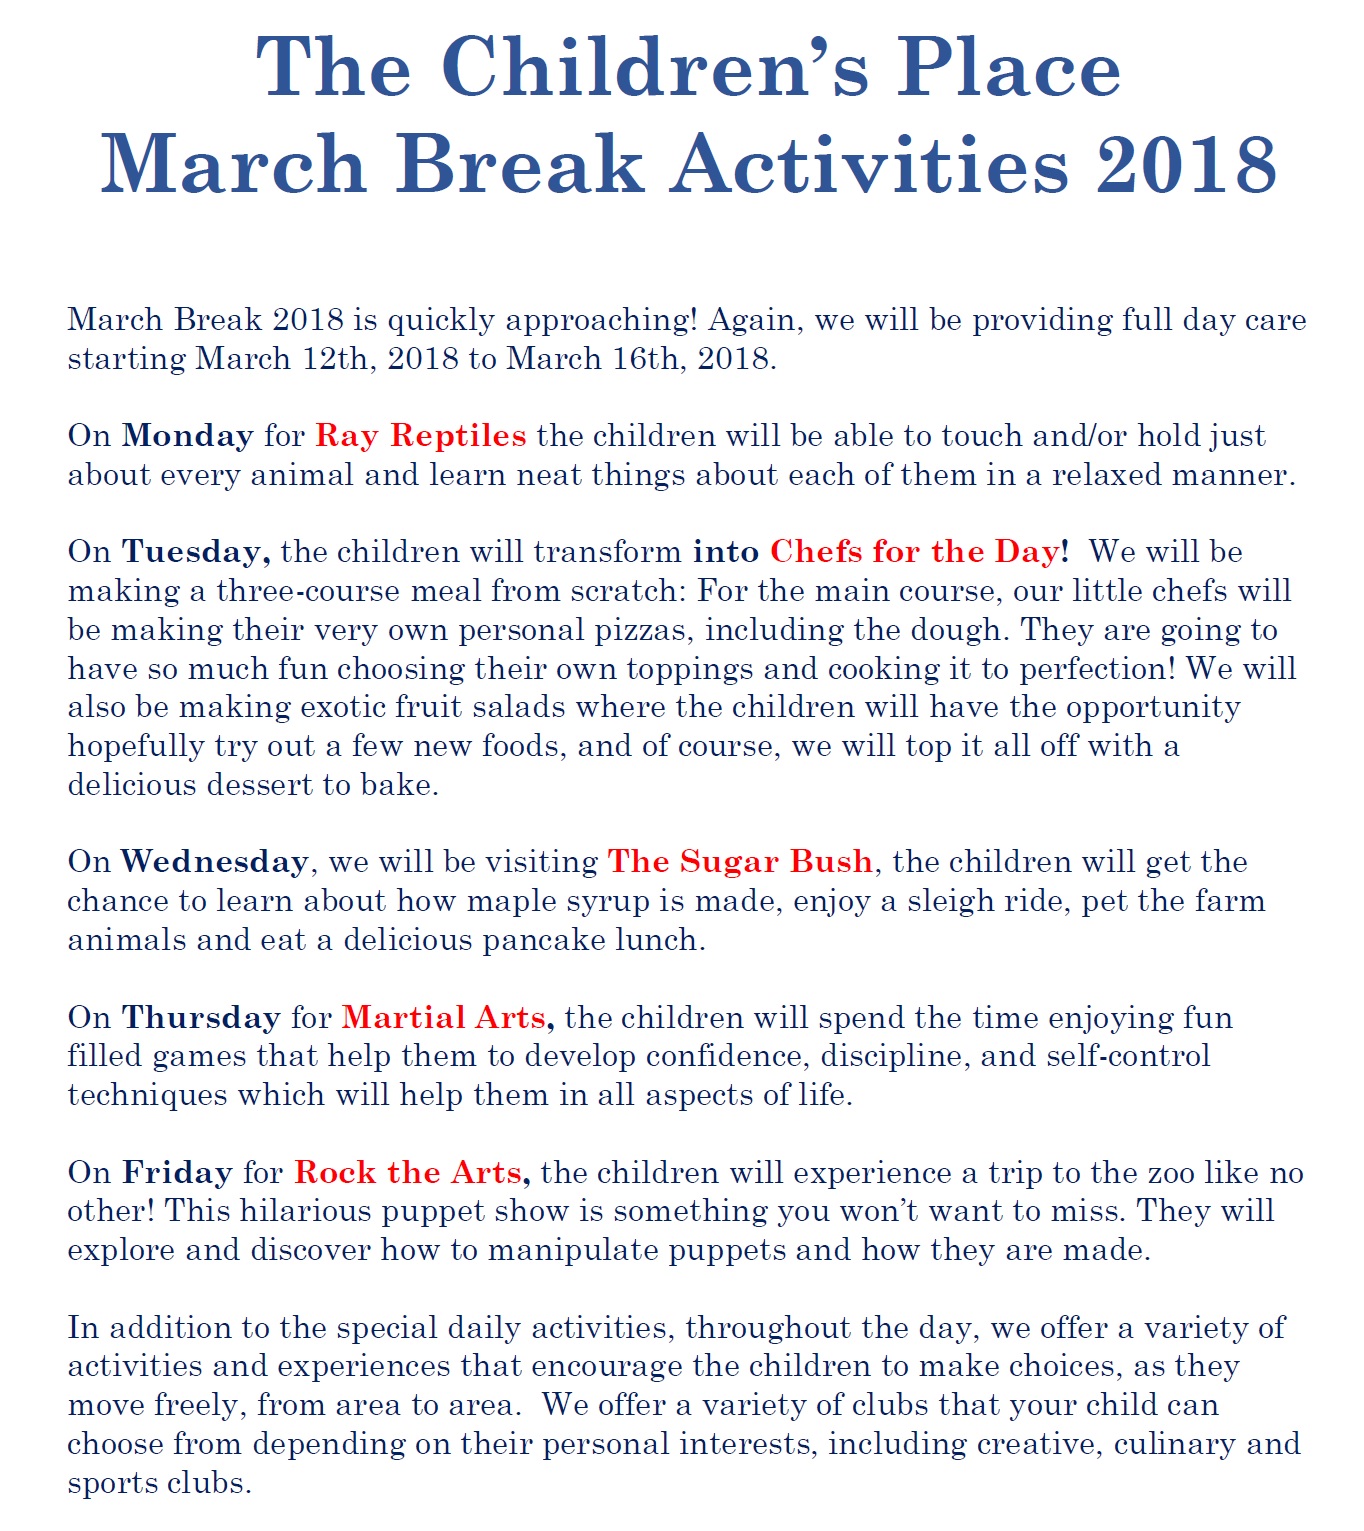 March Break 2018